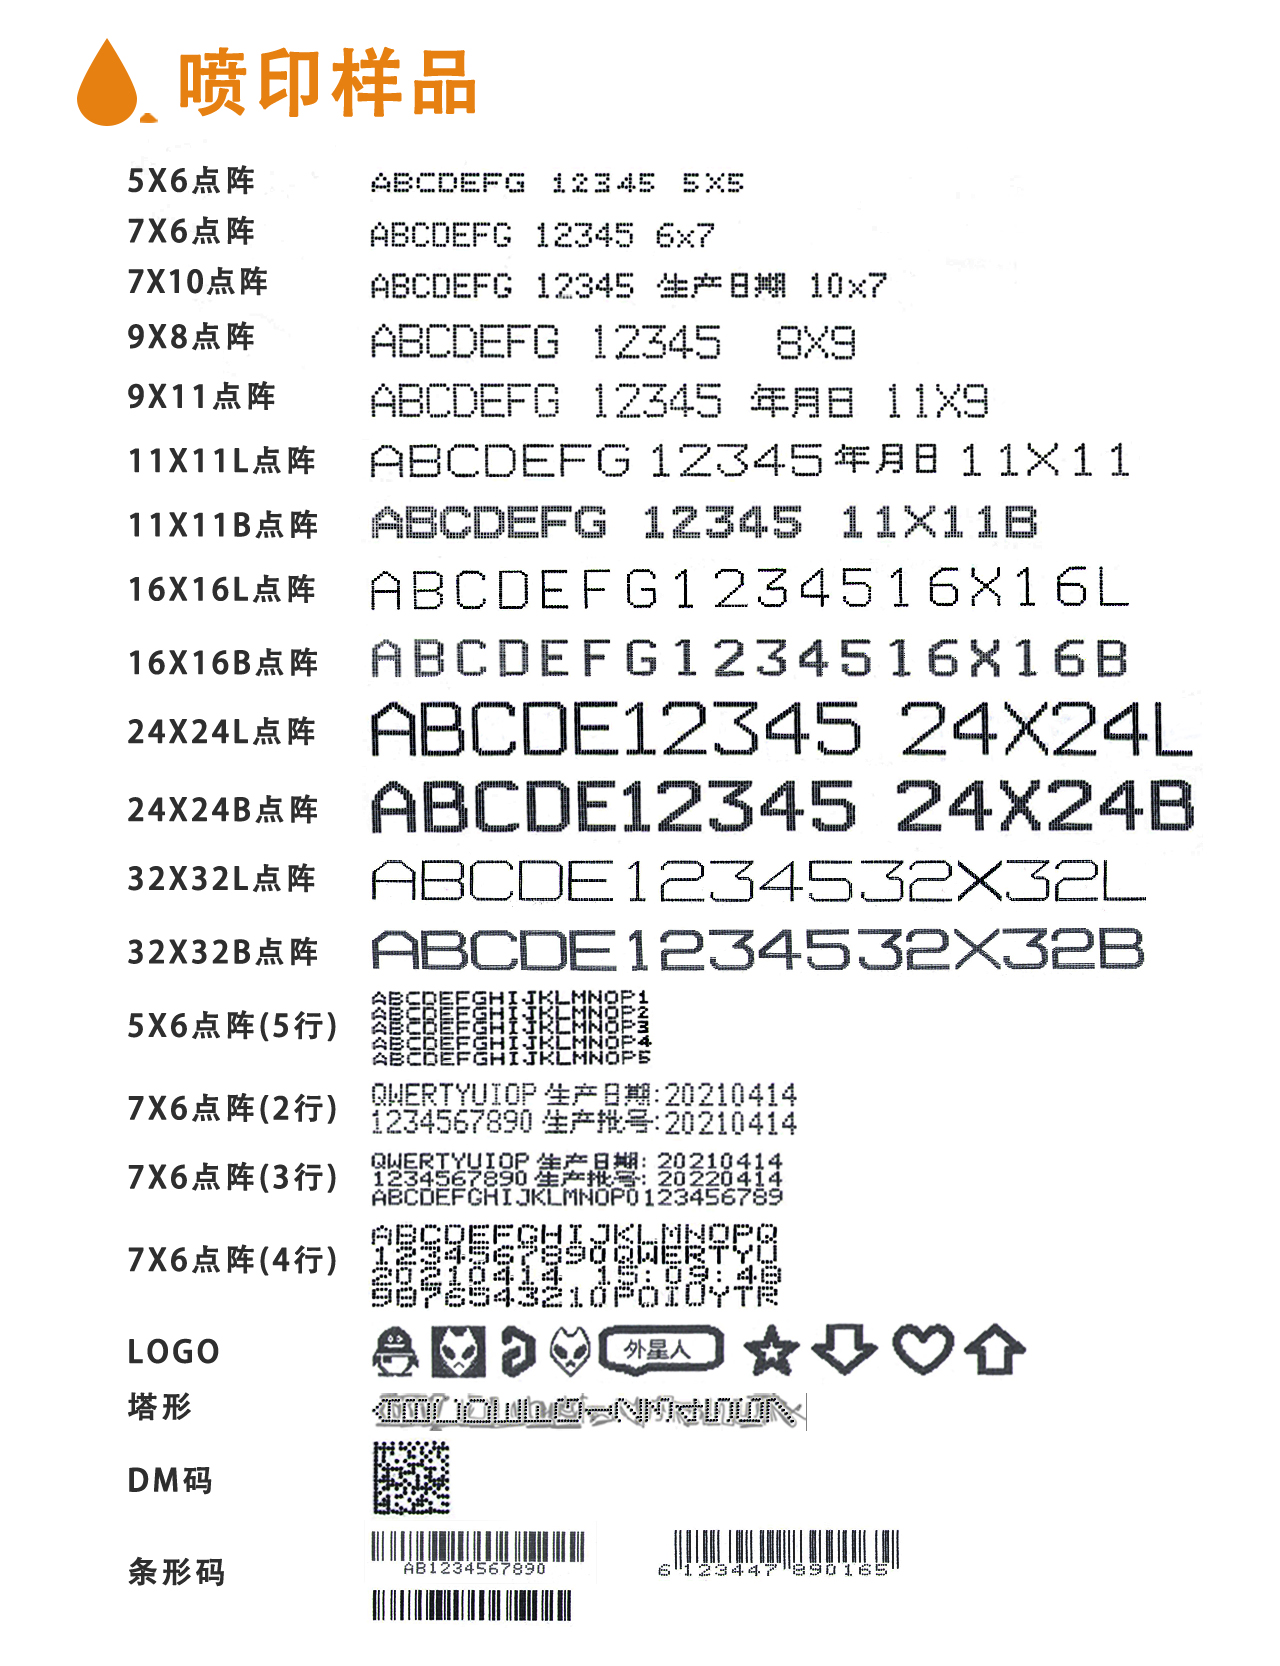 全网担保网·小字符喷码机 S400PLUS系列